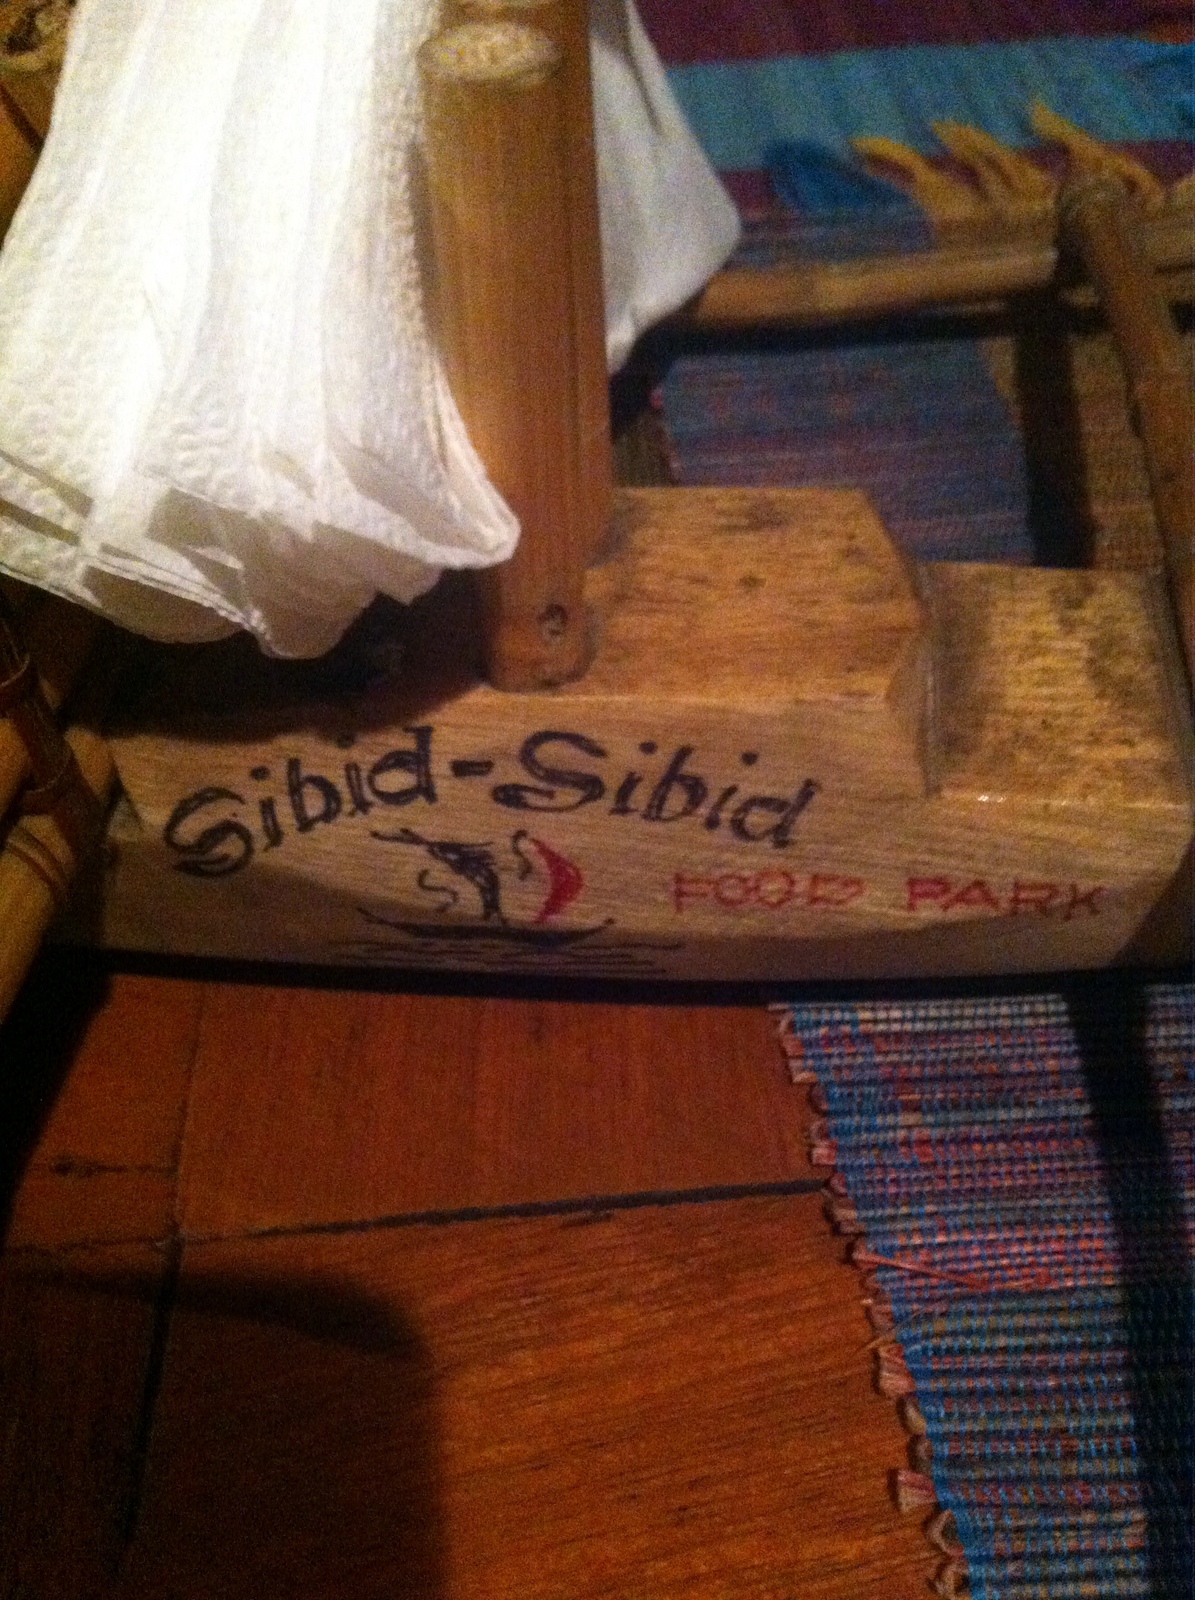 a-sibid-sibid-in-the-sibid-sibid-restaurant